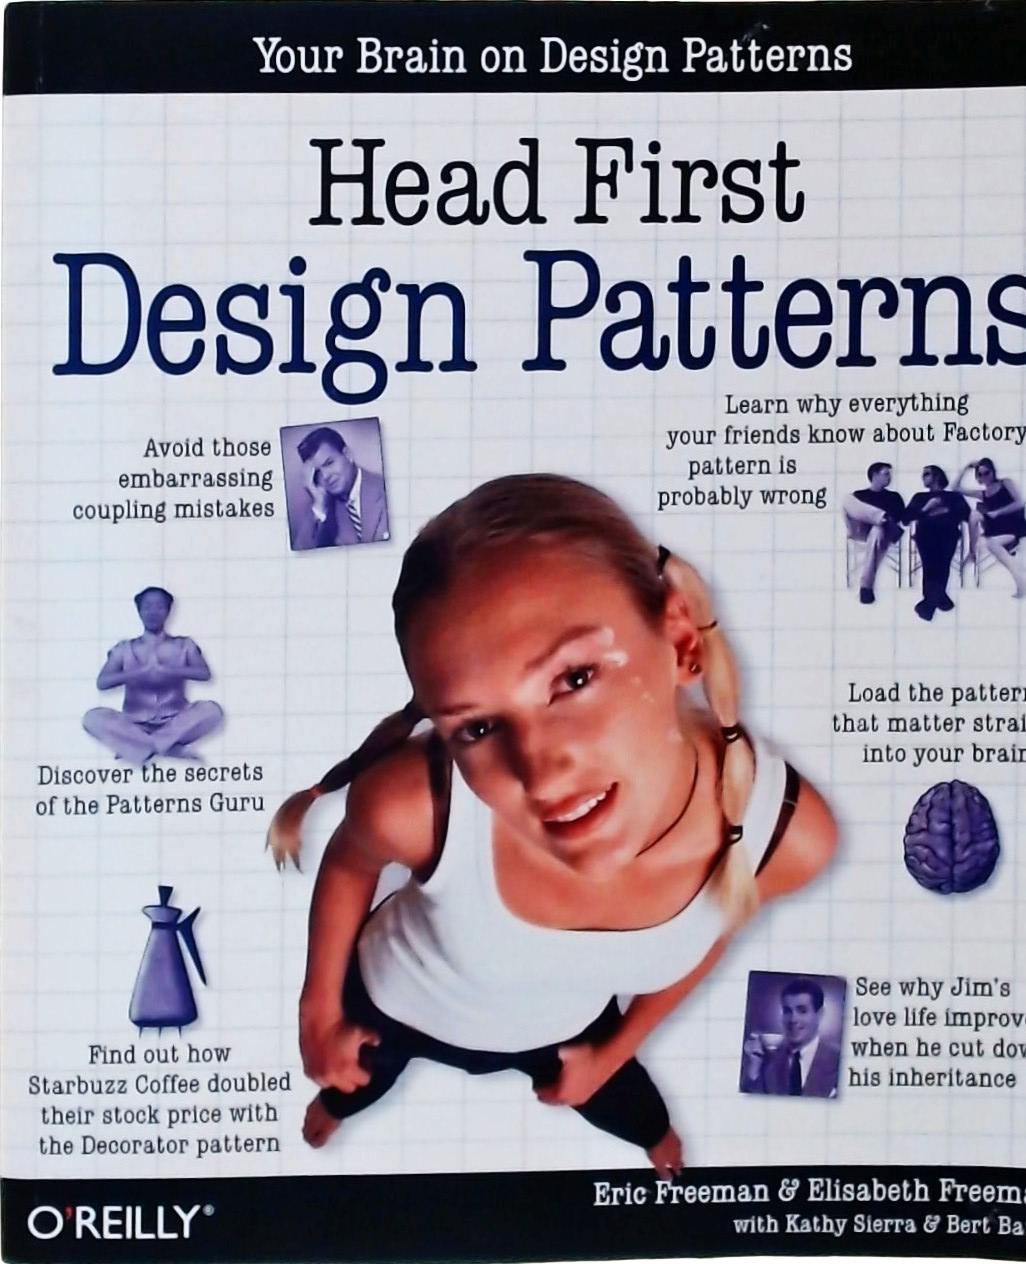 Head First, Design Patterns